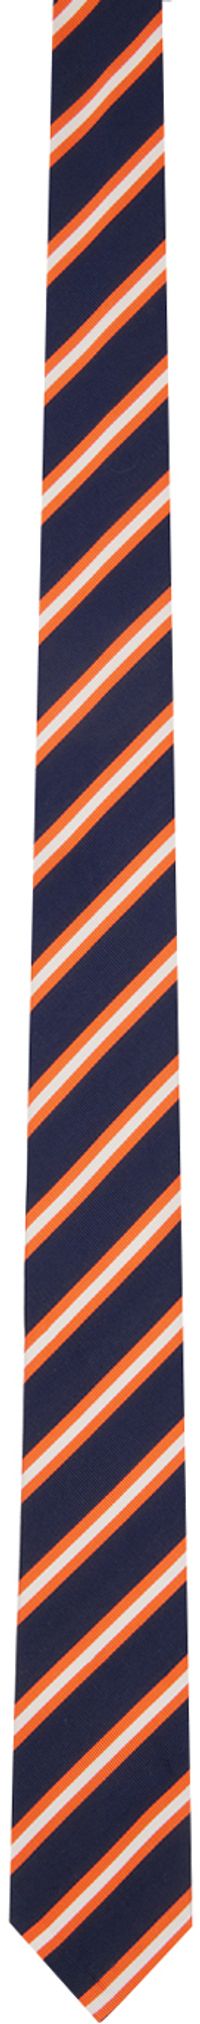 Thom Browne Navy & Orange Striped Neck Tie